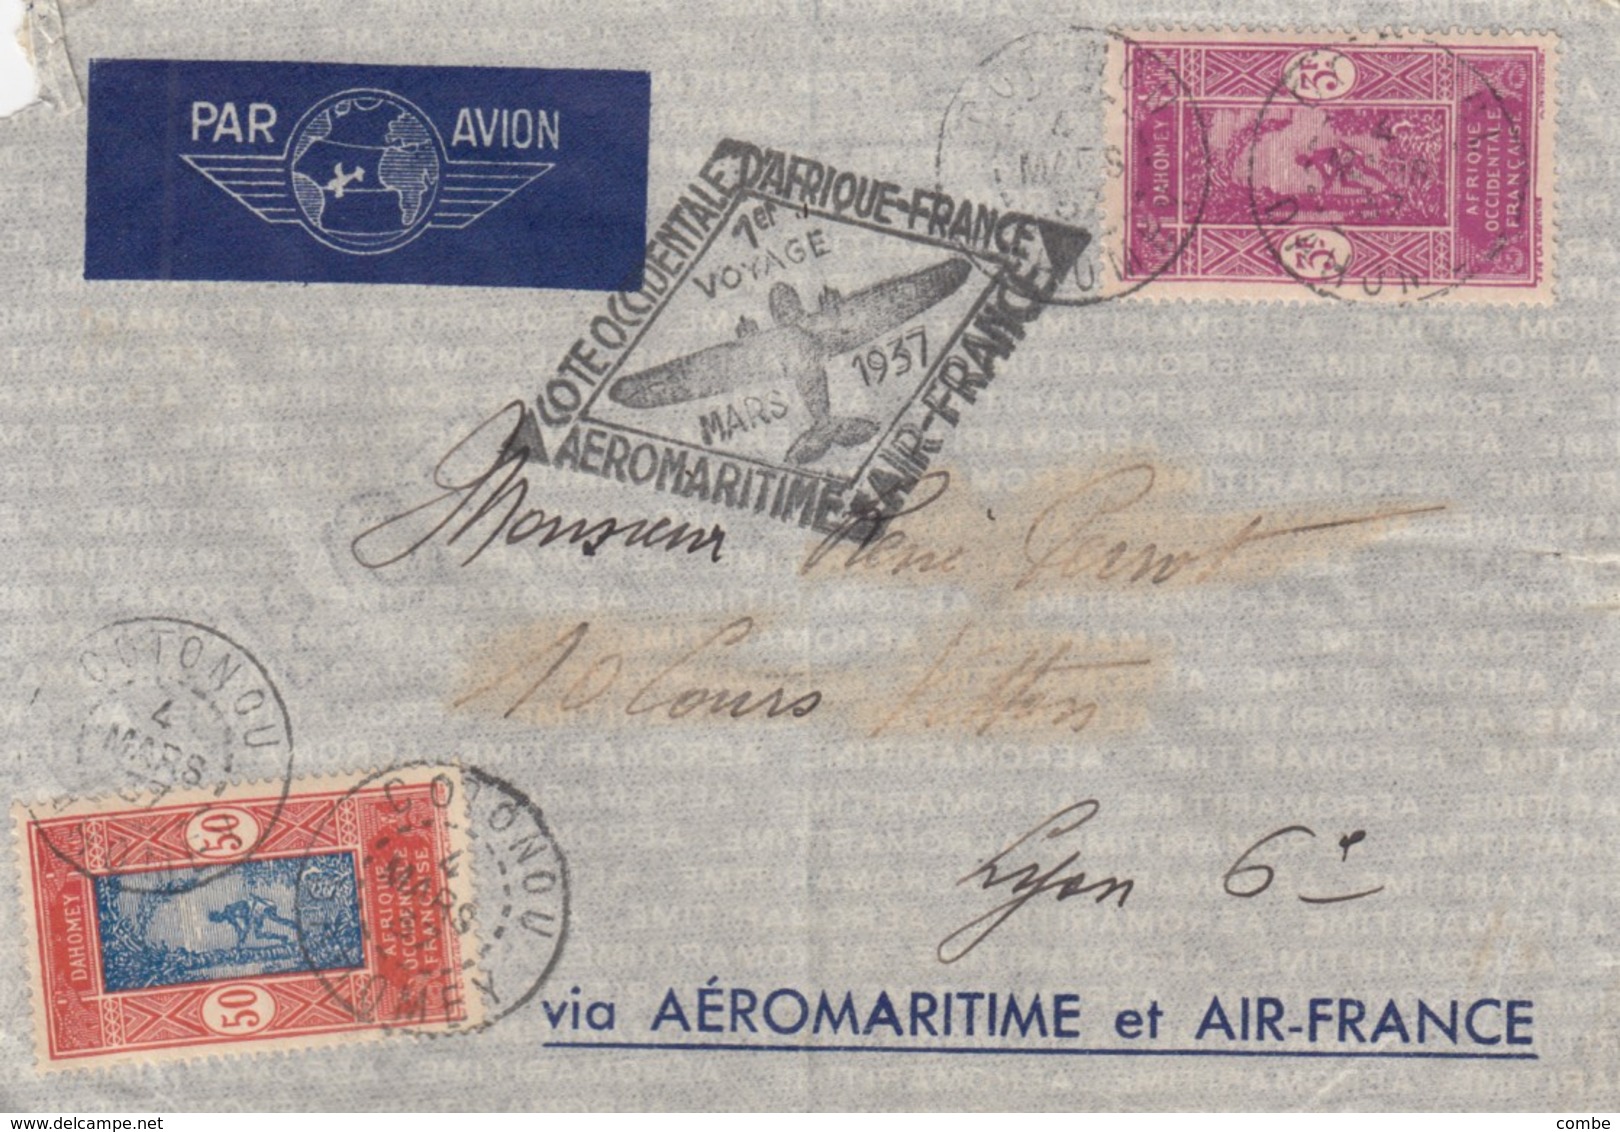 LETTRE. DAHOMEY. 1937. VOL COTE OCCIDENTALE AFRIQUE MAROC AIR FRANCE. AEROMARITIME. COTONOU POUR LYON /   2 - Briefe U. Dokumente